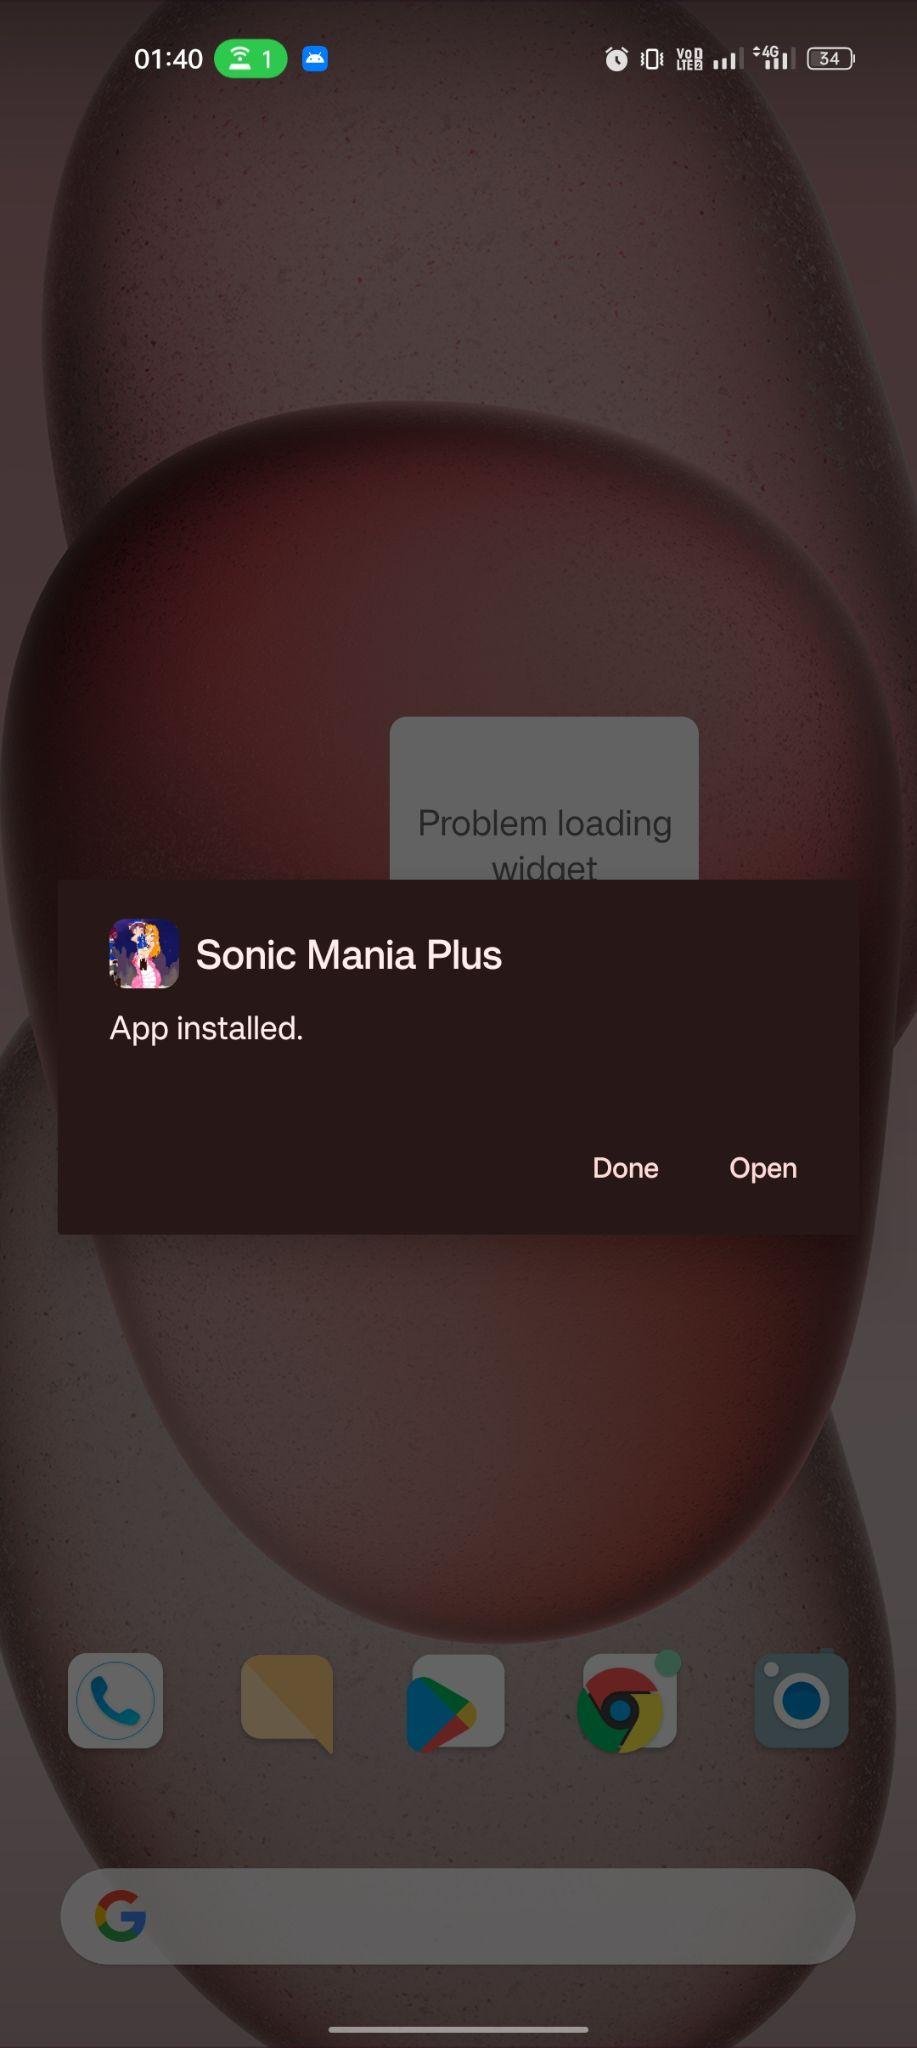 Sonic Mania Plus apk installed